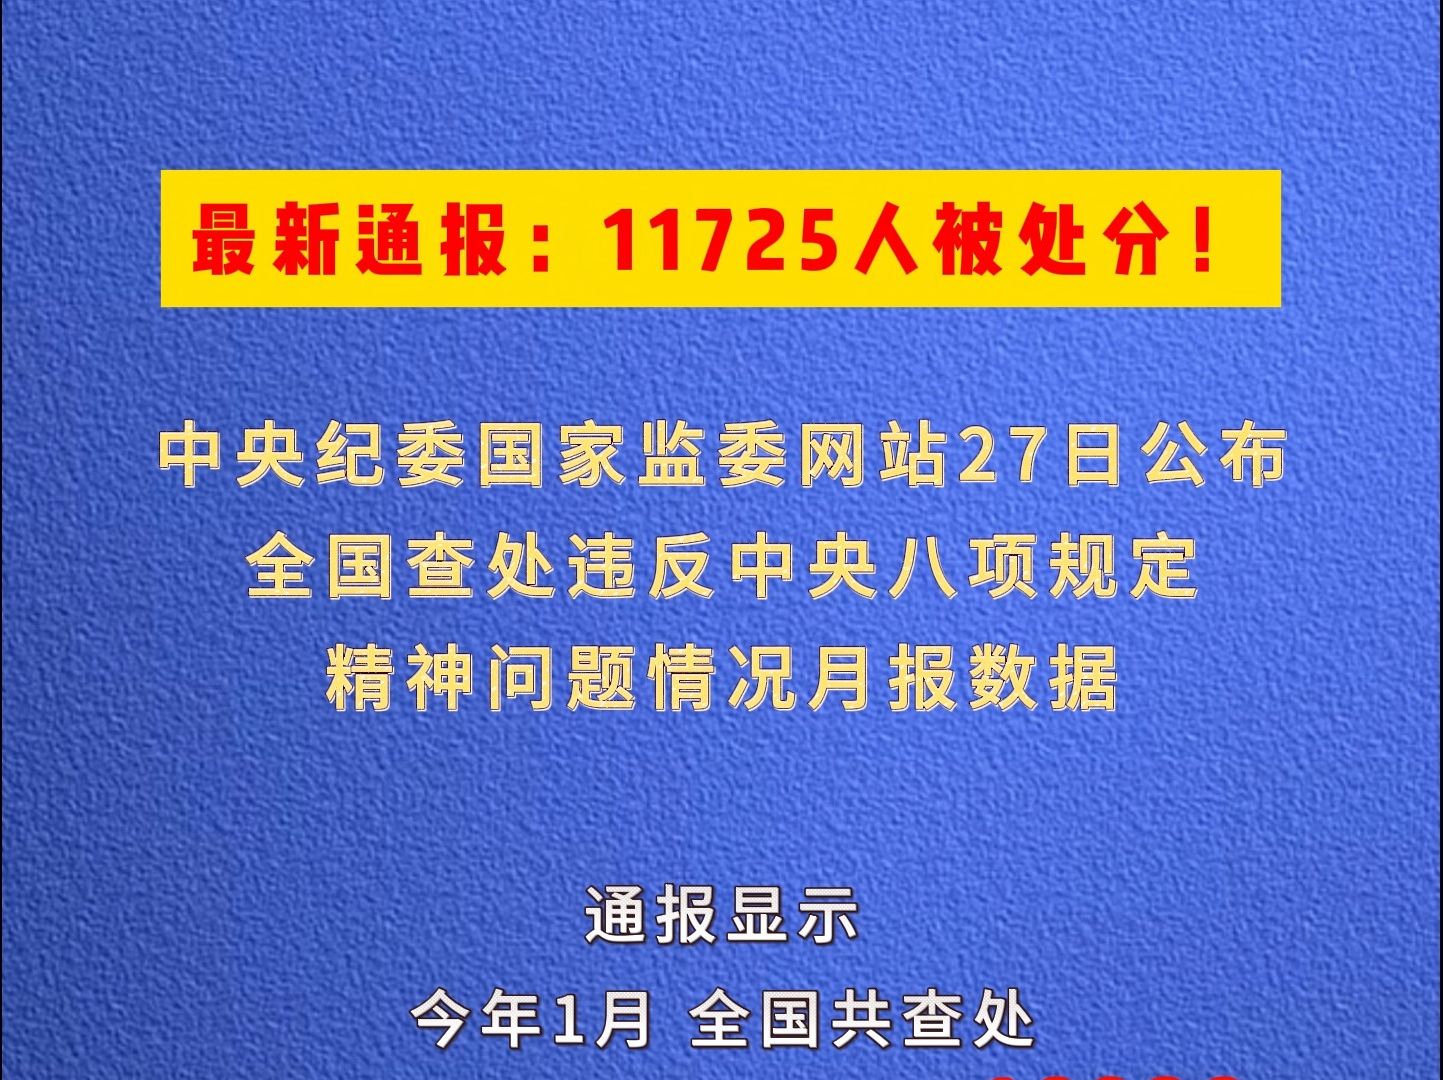 最新通报：11725人被处分！